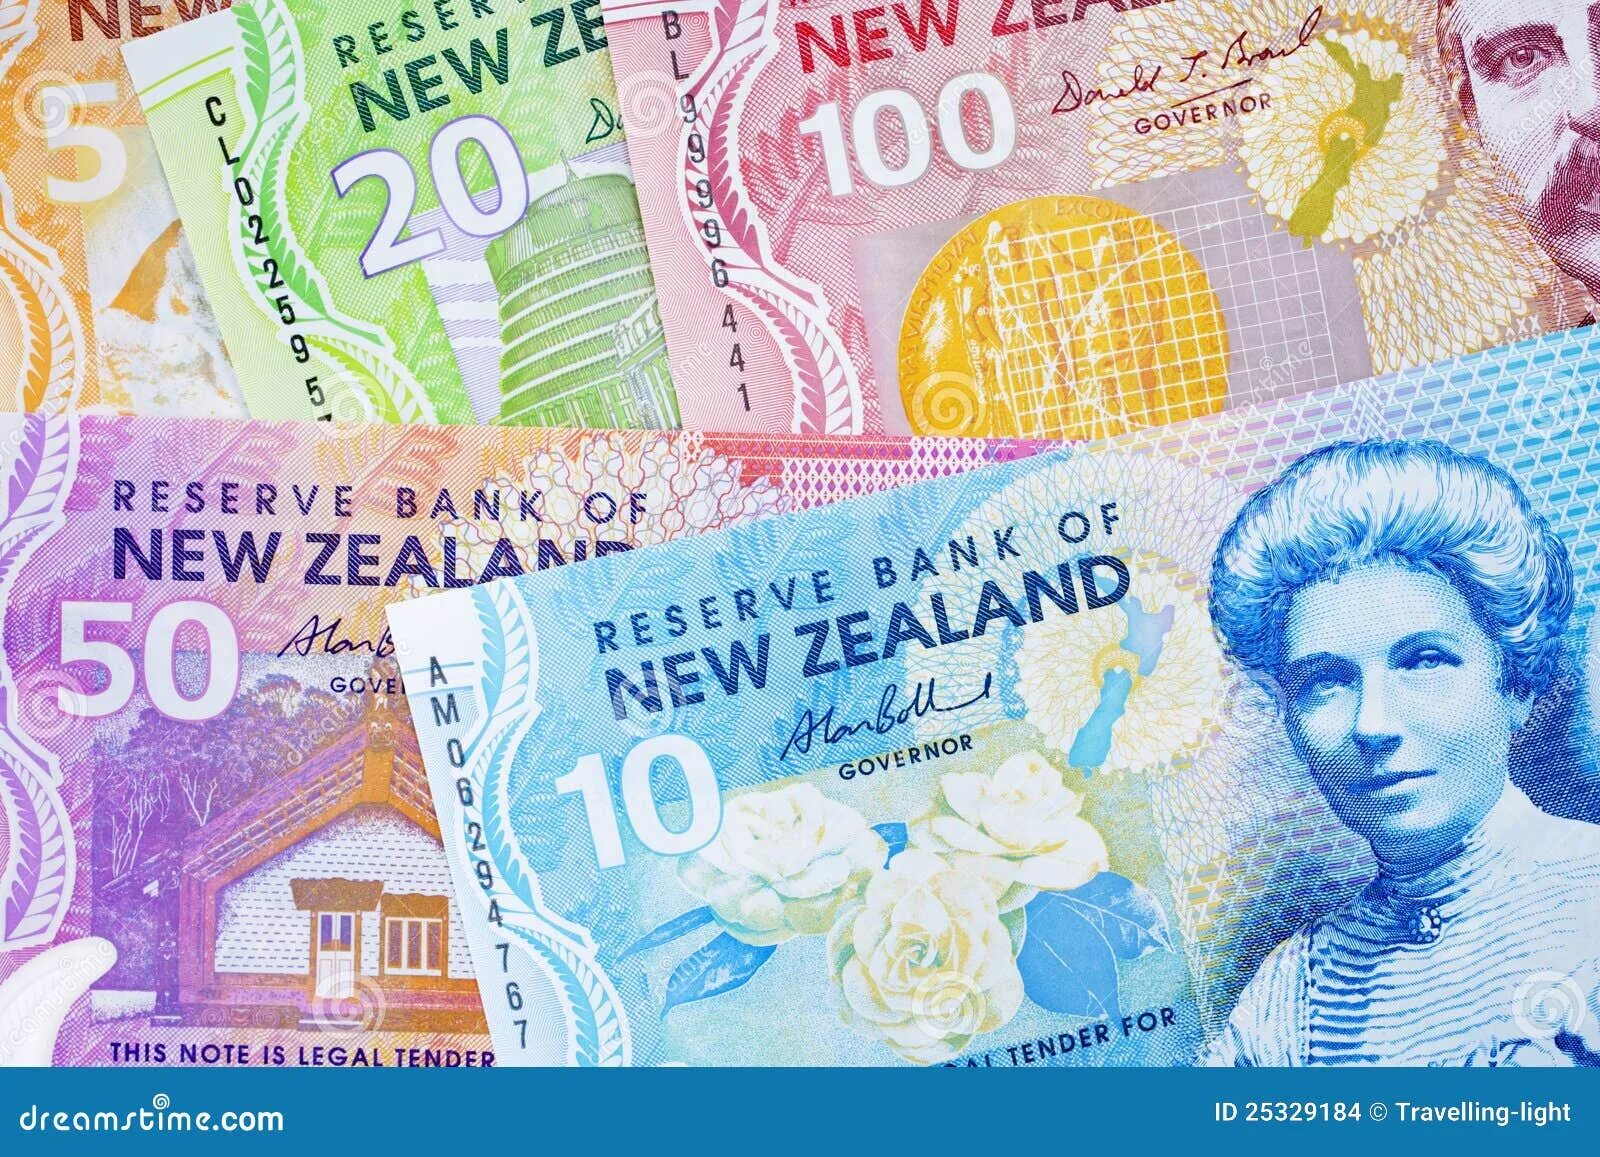 Новая Зеландия экономика. Экономика новой Зеландии картинки. Налоговая система новой Зеландии. Банк новой Зеландии.